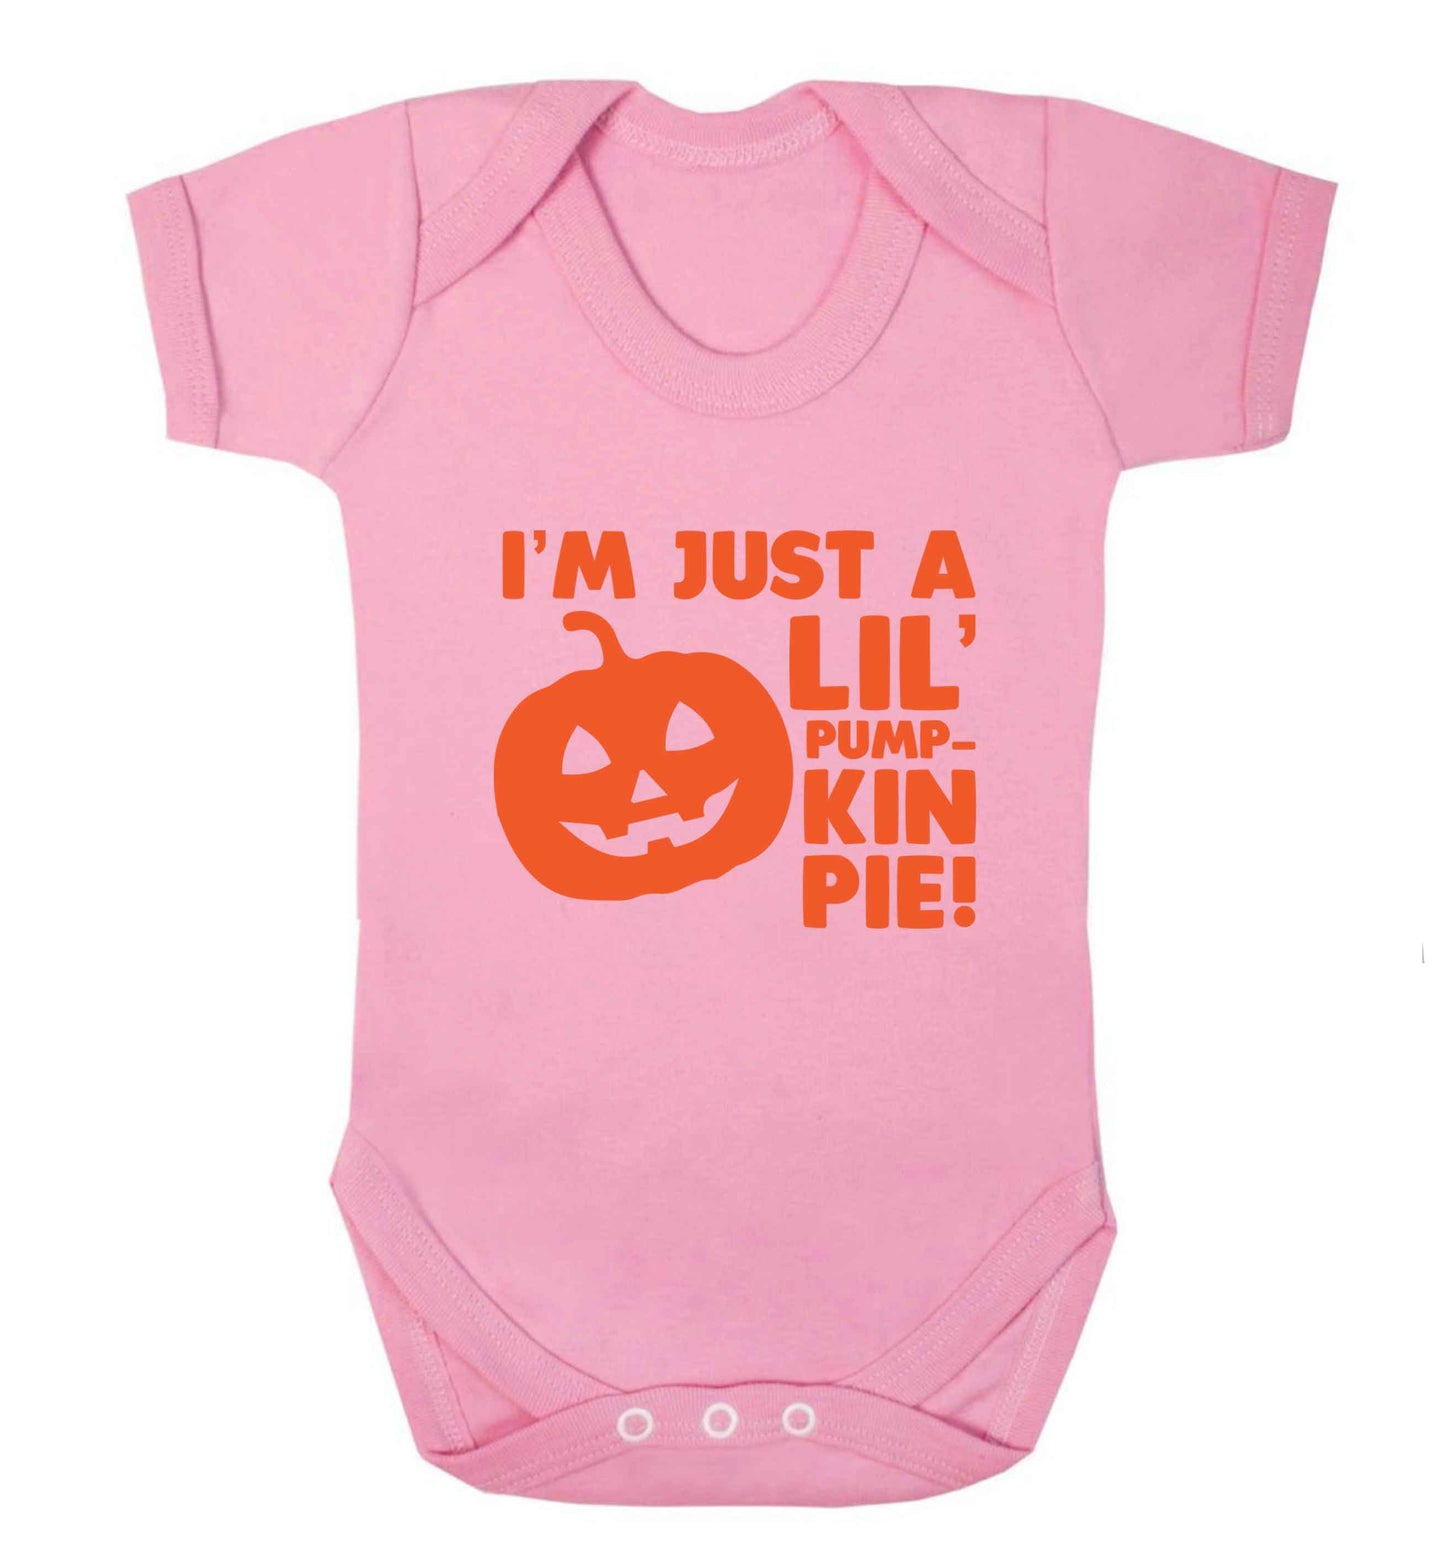 I'm just a lil' pumpkin pie baby vest pale pink 18-24 months